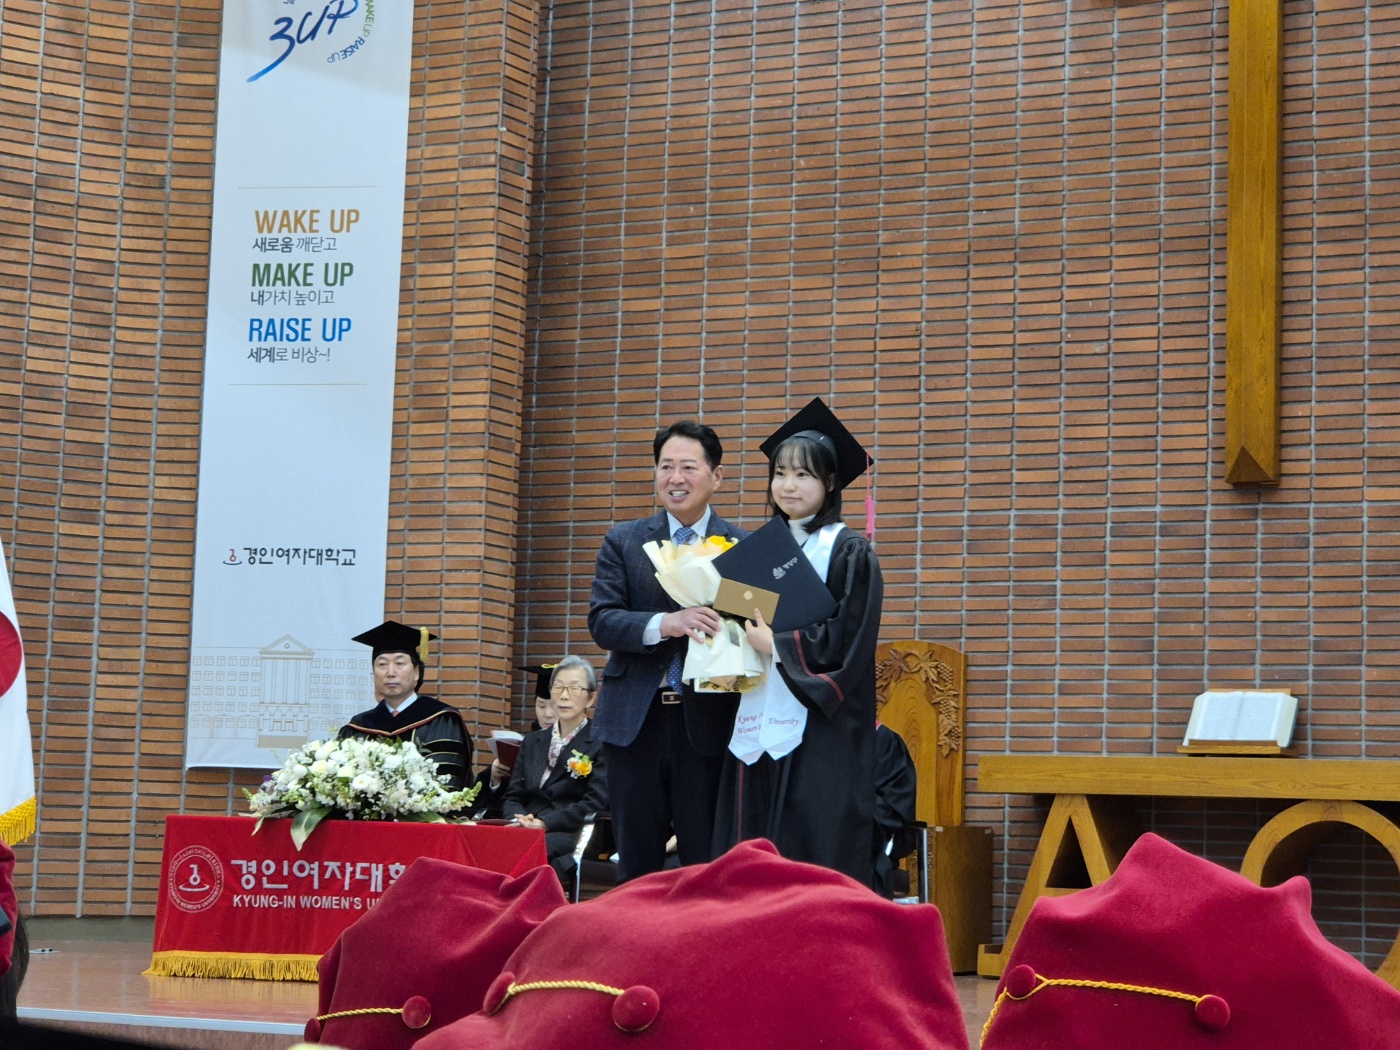 【축하】 사회복지과 제31회 전기학위수여식 교외수상 졸업생 여러분 축하합니다!